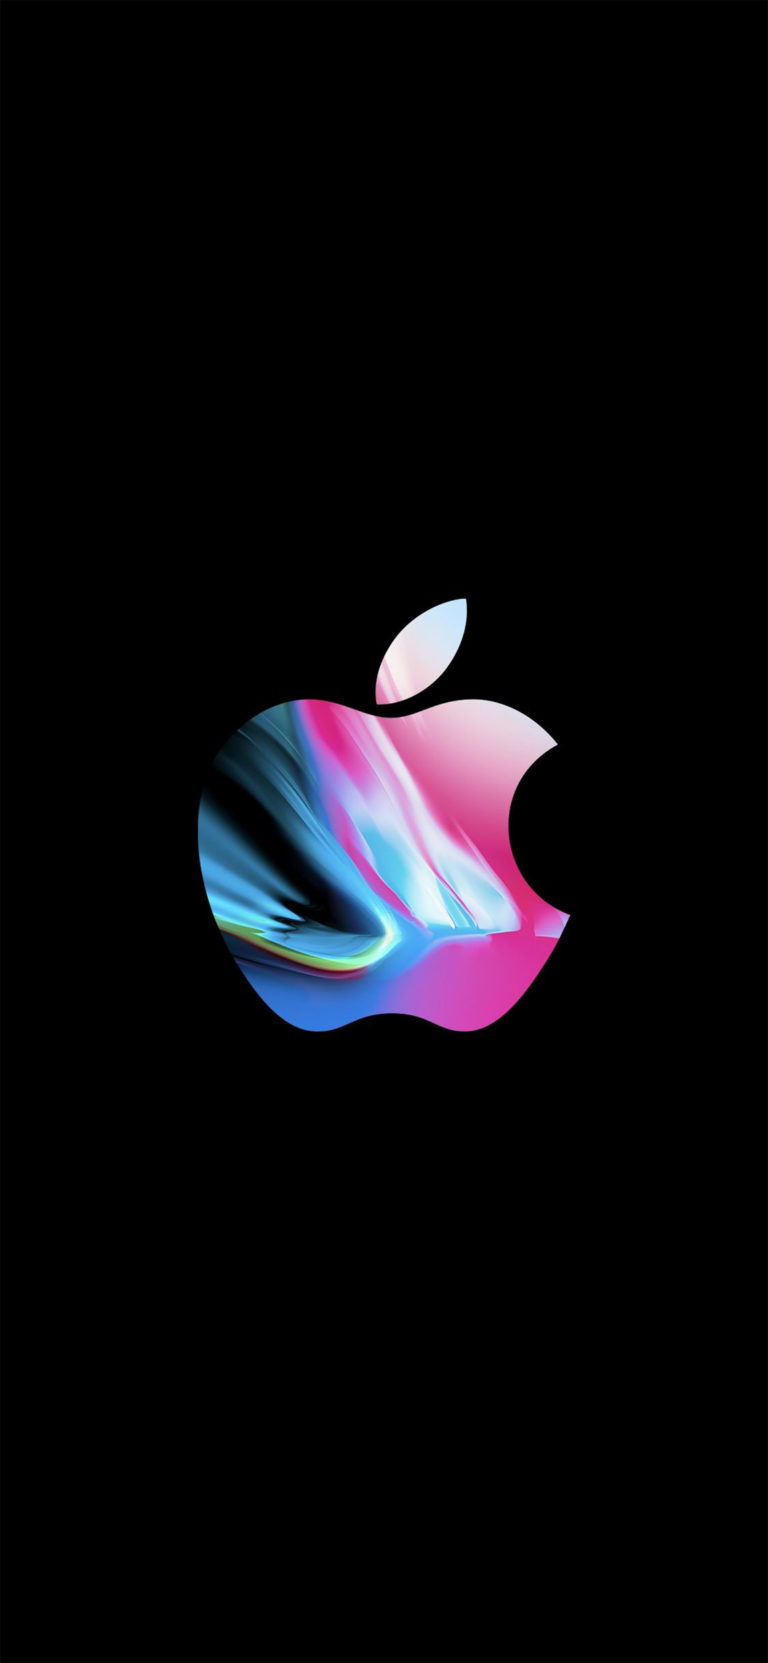 اجمل صور خلفيات الآيفون اكس الأصلية وأحلى خلفية موبايل Apple iPhone X